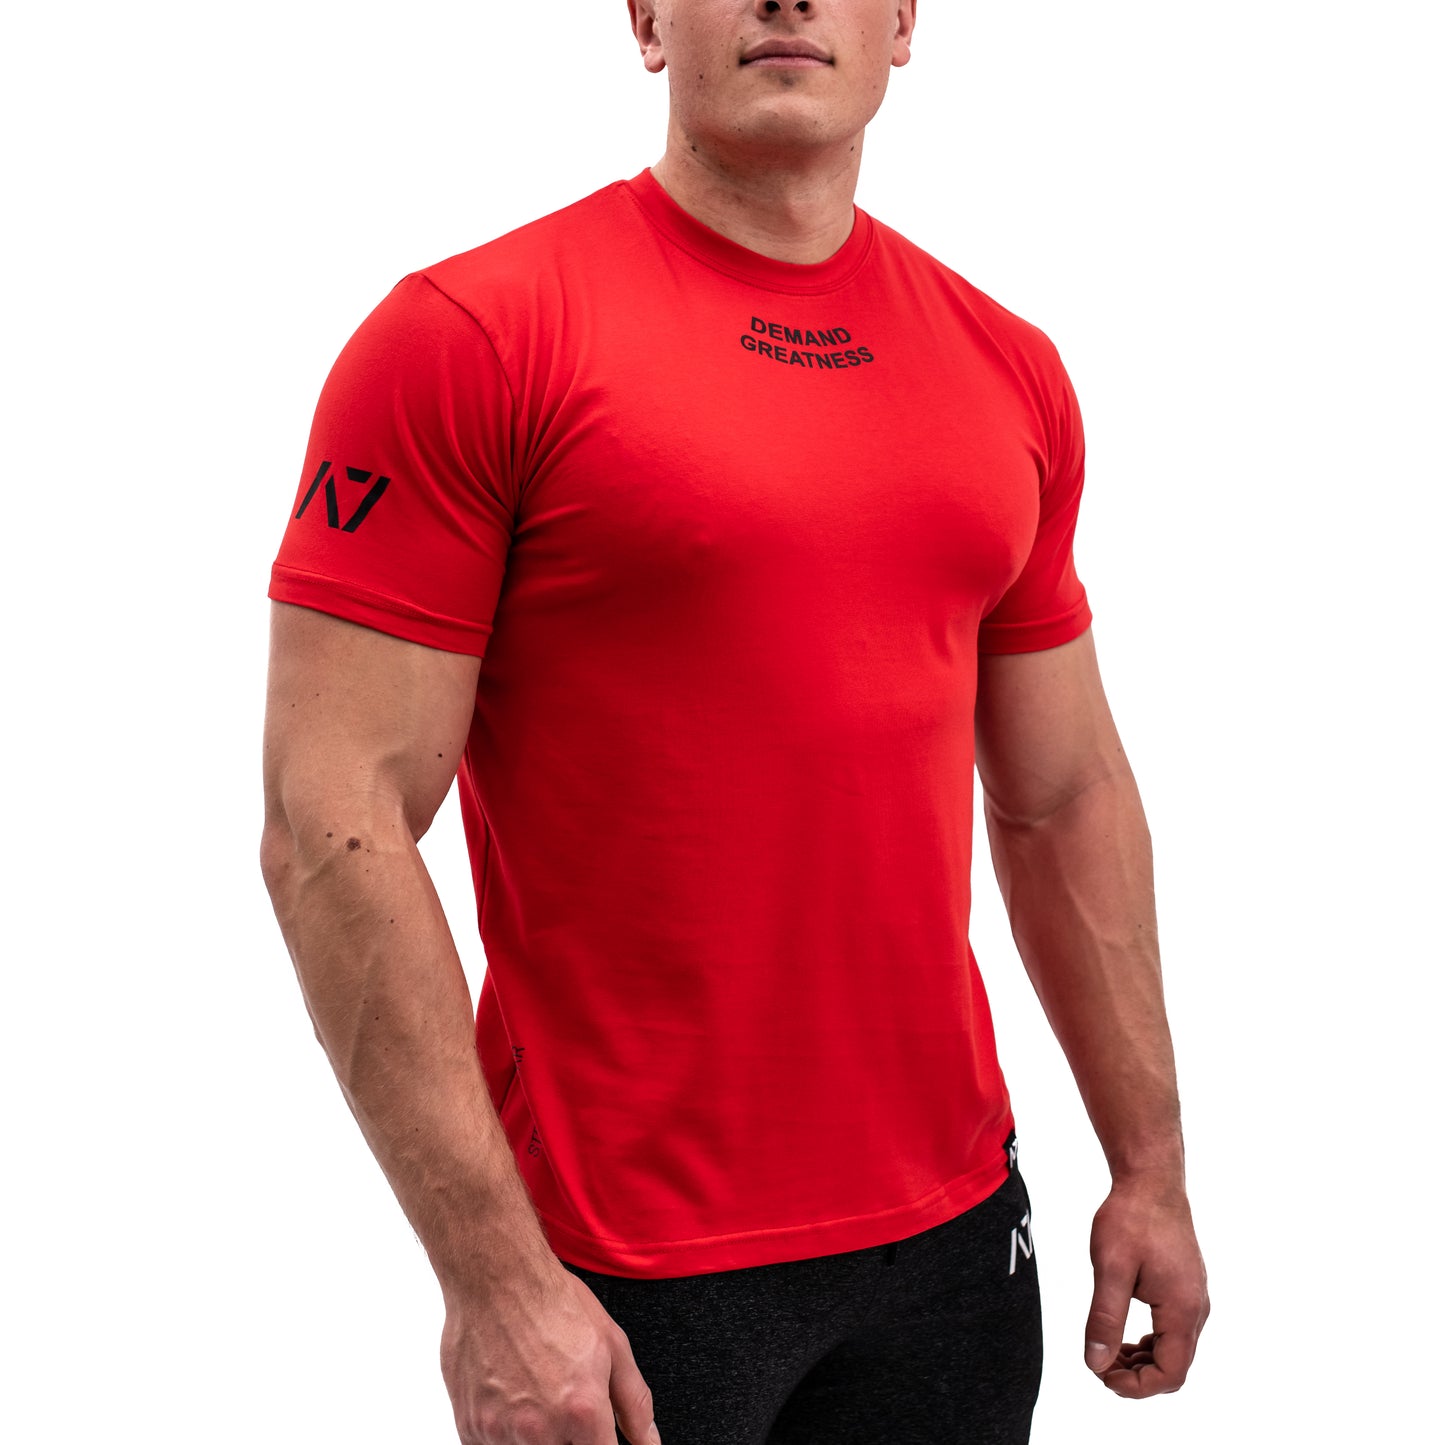 
                  
                    Demand Greatness IPF Approved Logo Men's Meet Shirt - Red
                  
                